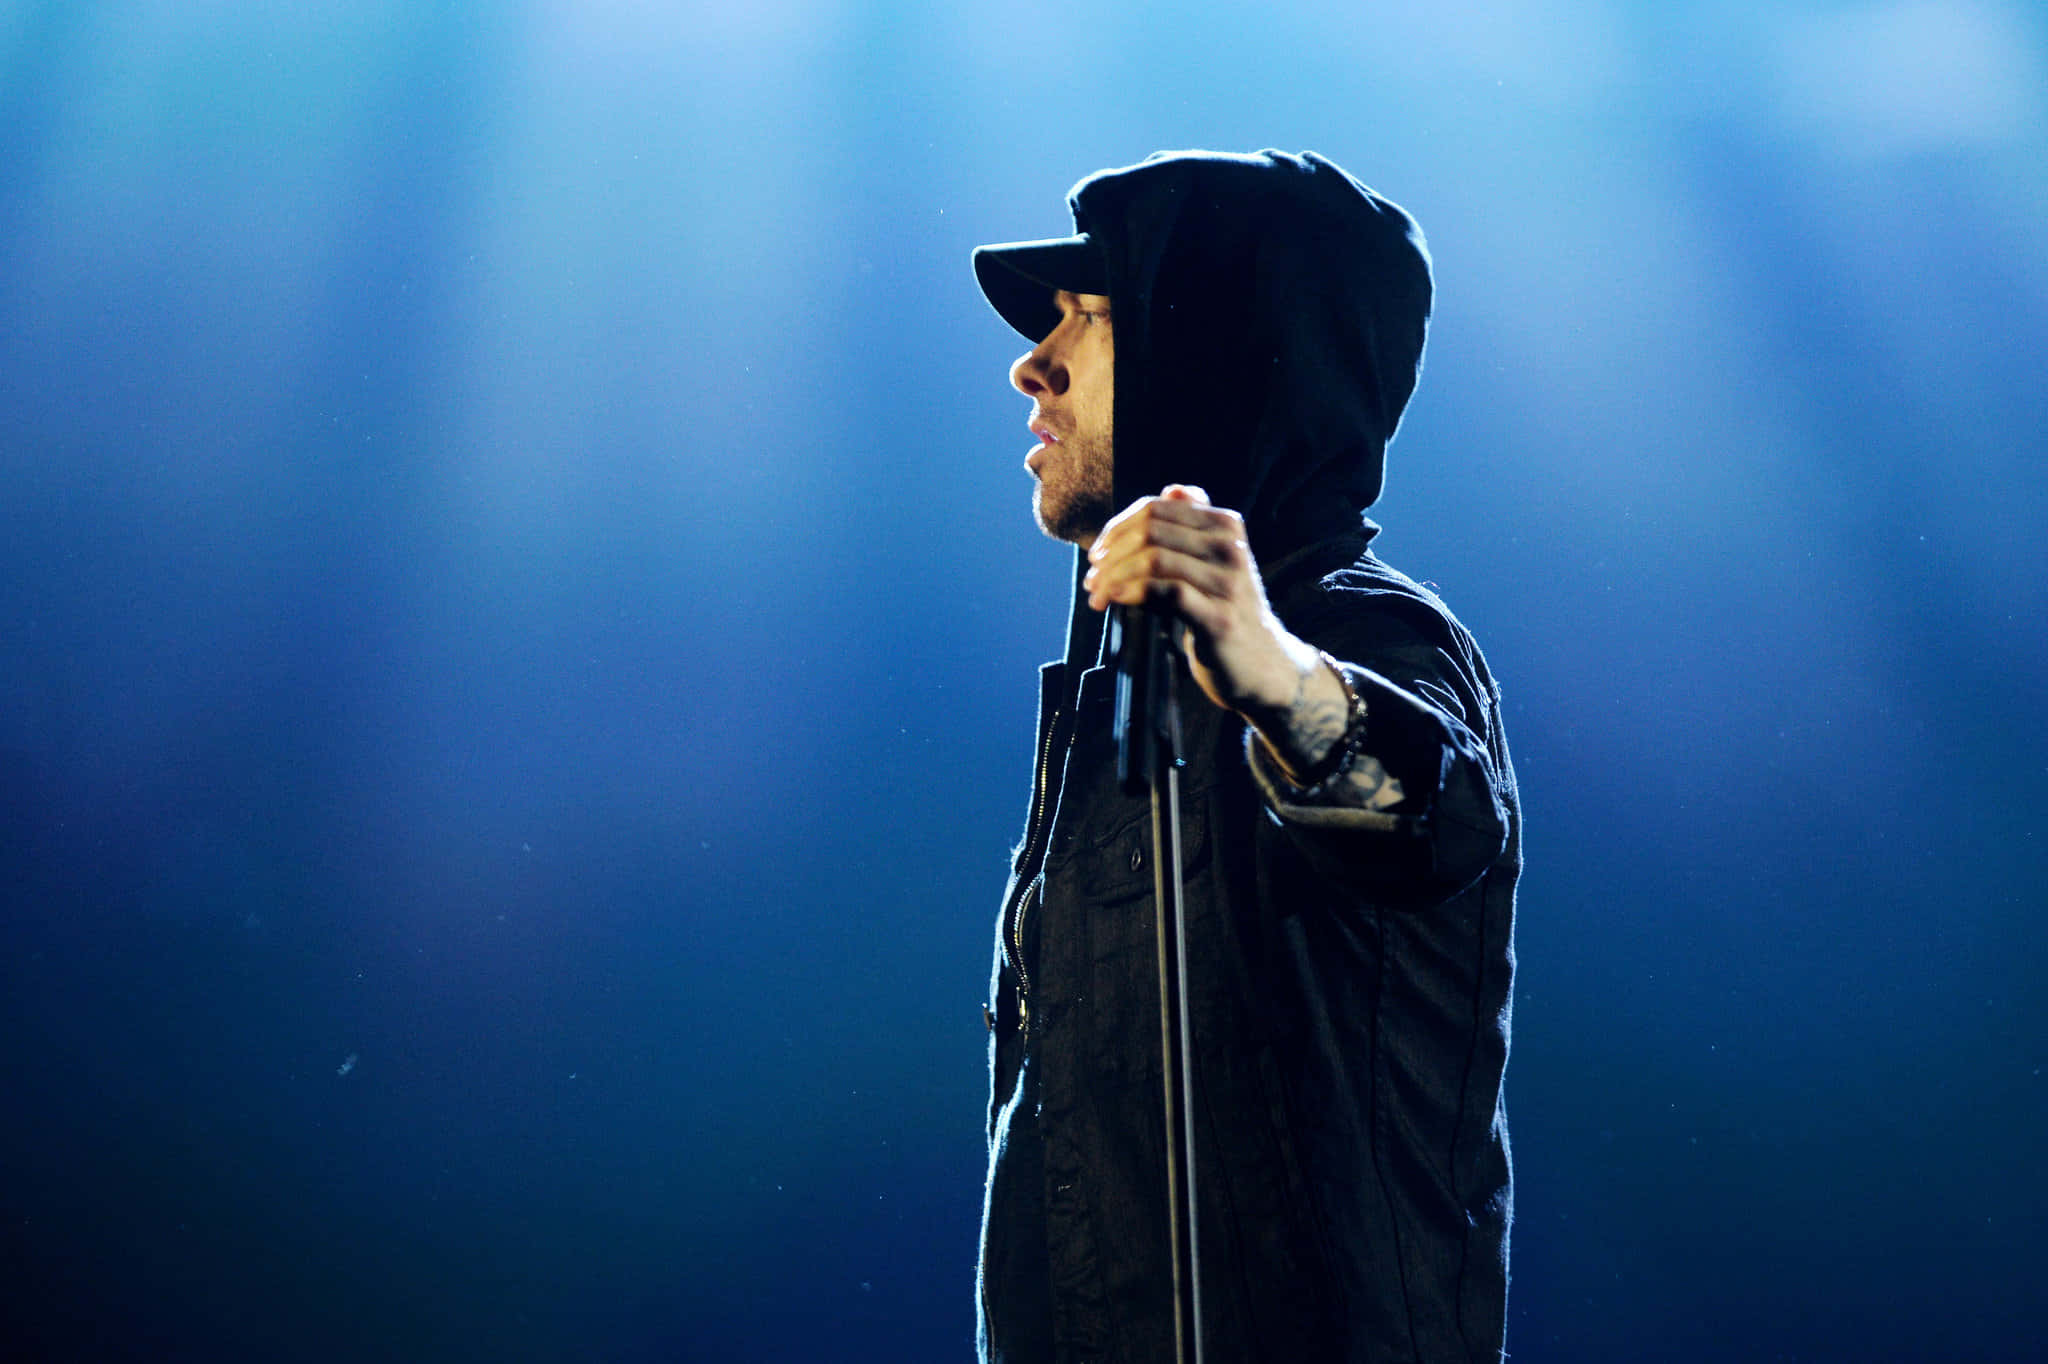 Eminemin Esibizione Dal Vivo Sul Palco